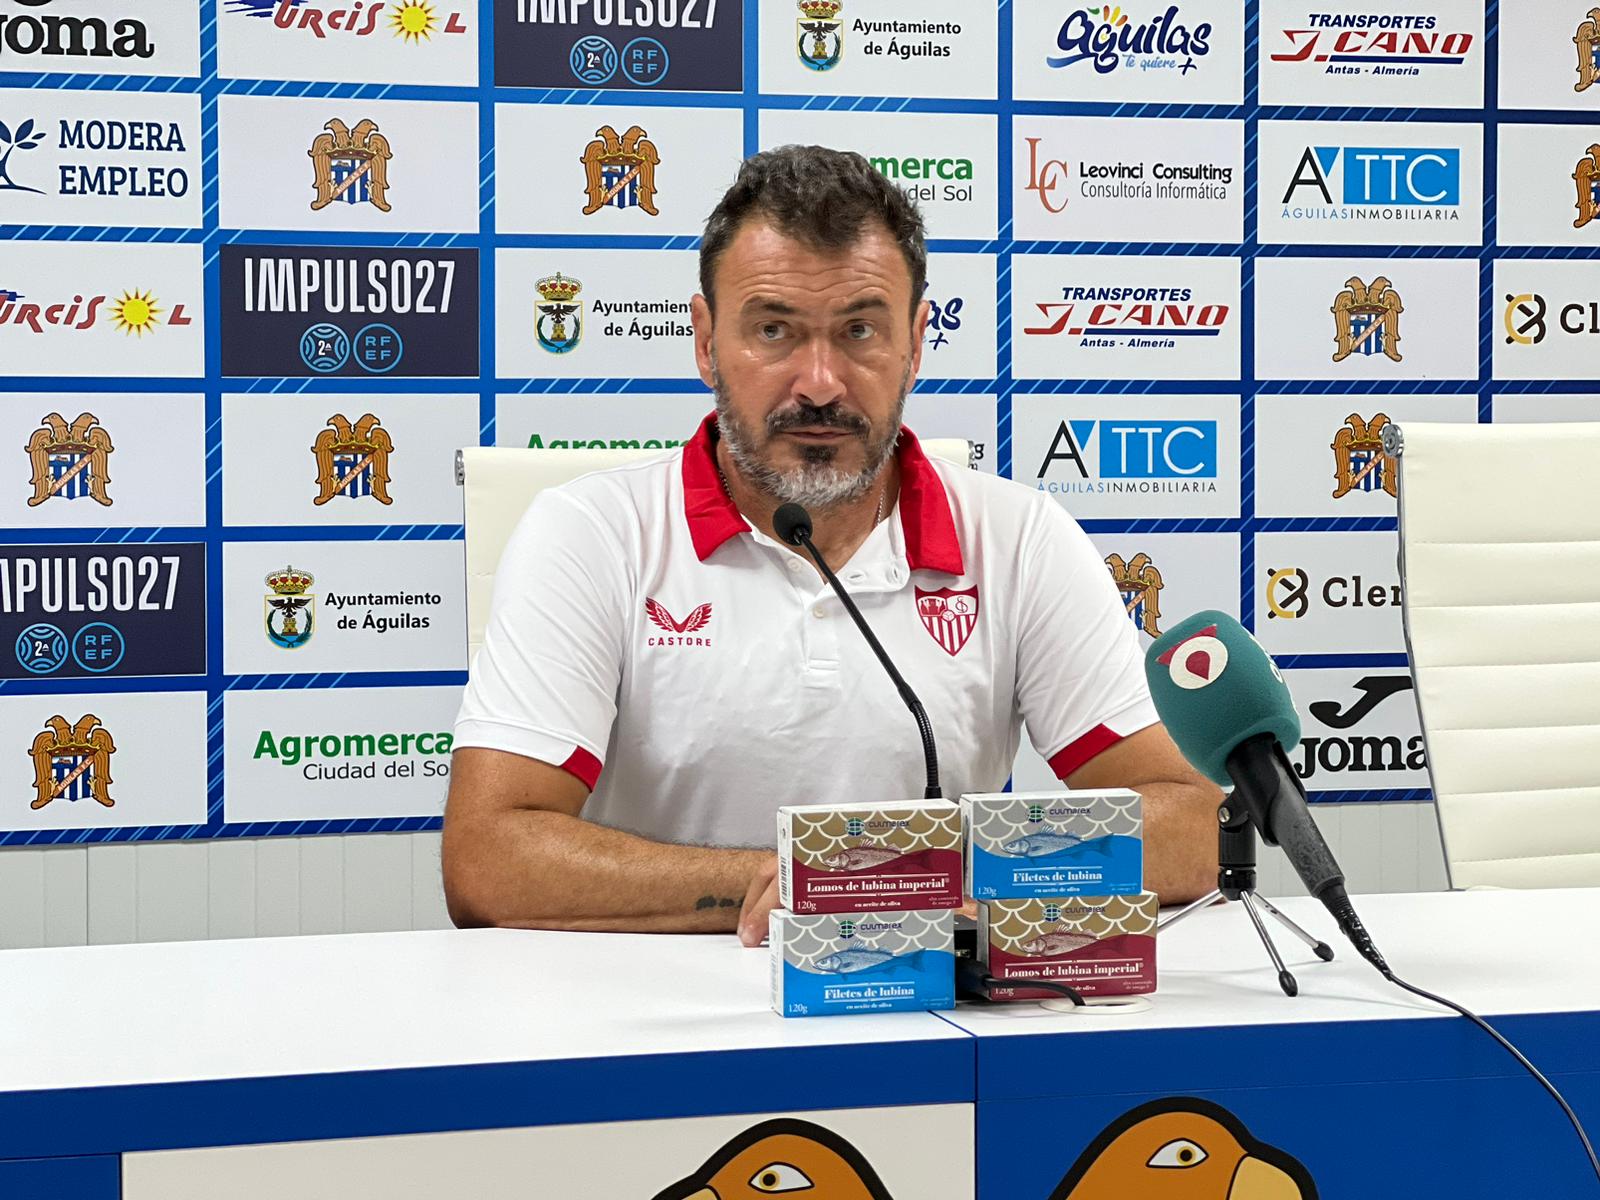 Jesús Galván, Sevilla Atlético coach